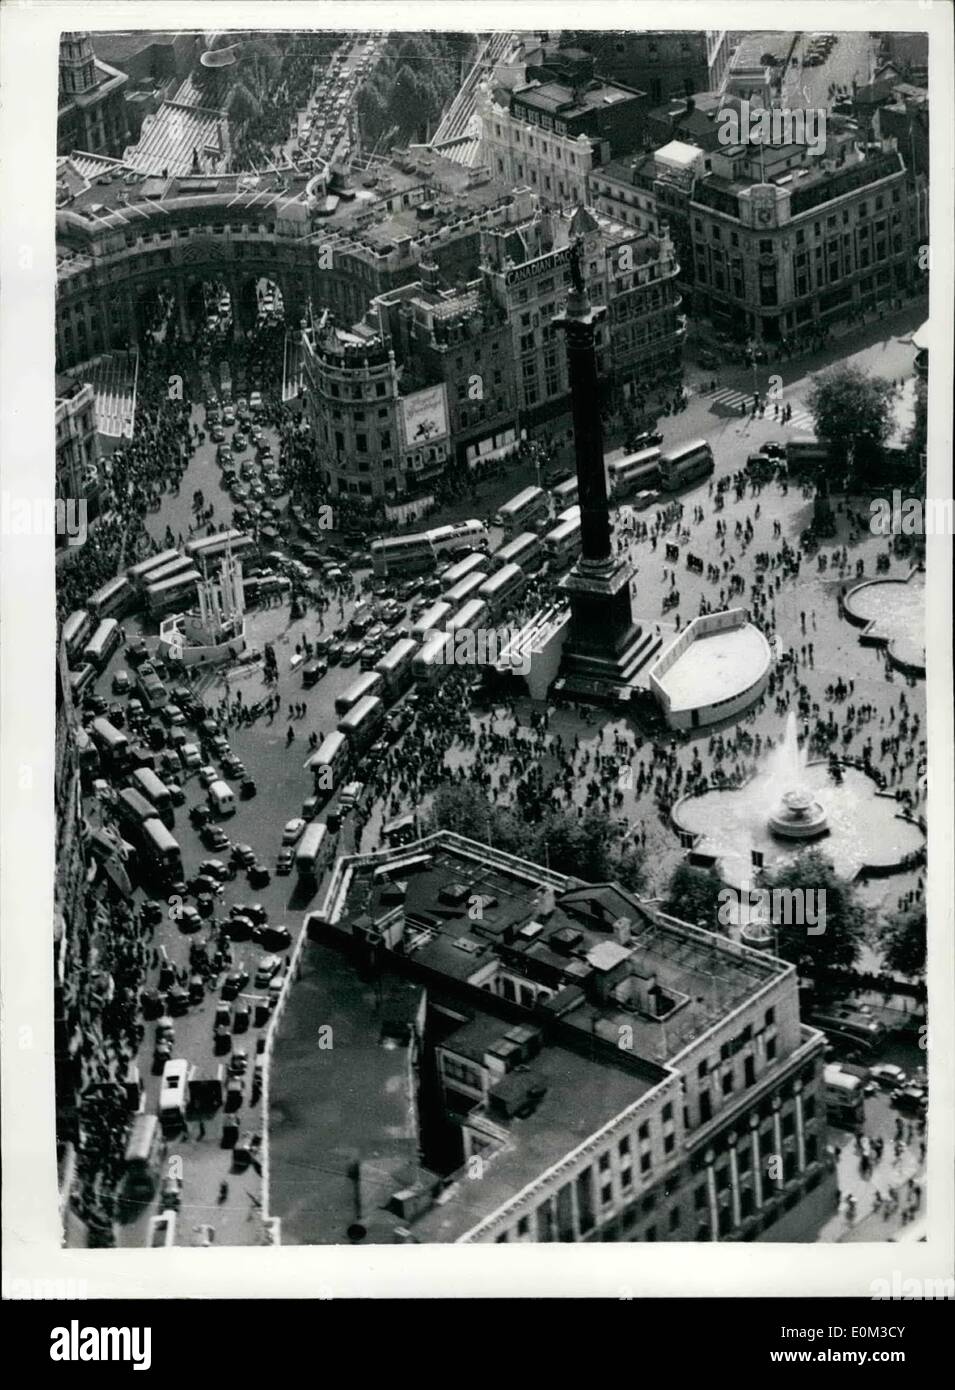 Jun 06, 1953 - Coches y personas paquete Trafalgar Square... Pre-Coronation escena desde el aire. La escena desde el aire en la tarde de ayer como arroyos de coches y personas que viajan entre Mall y Trafalgar square. Los autobuses están atascadas del capot para cola de todo Nelson's Column. Foto de stock